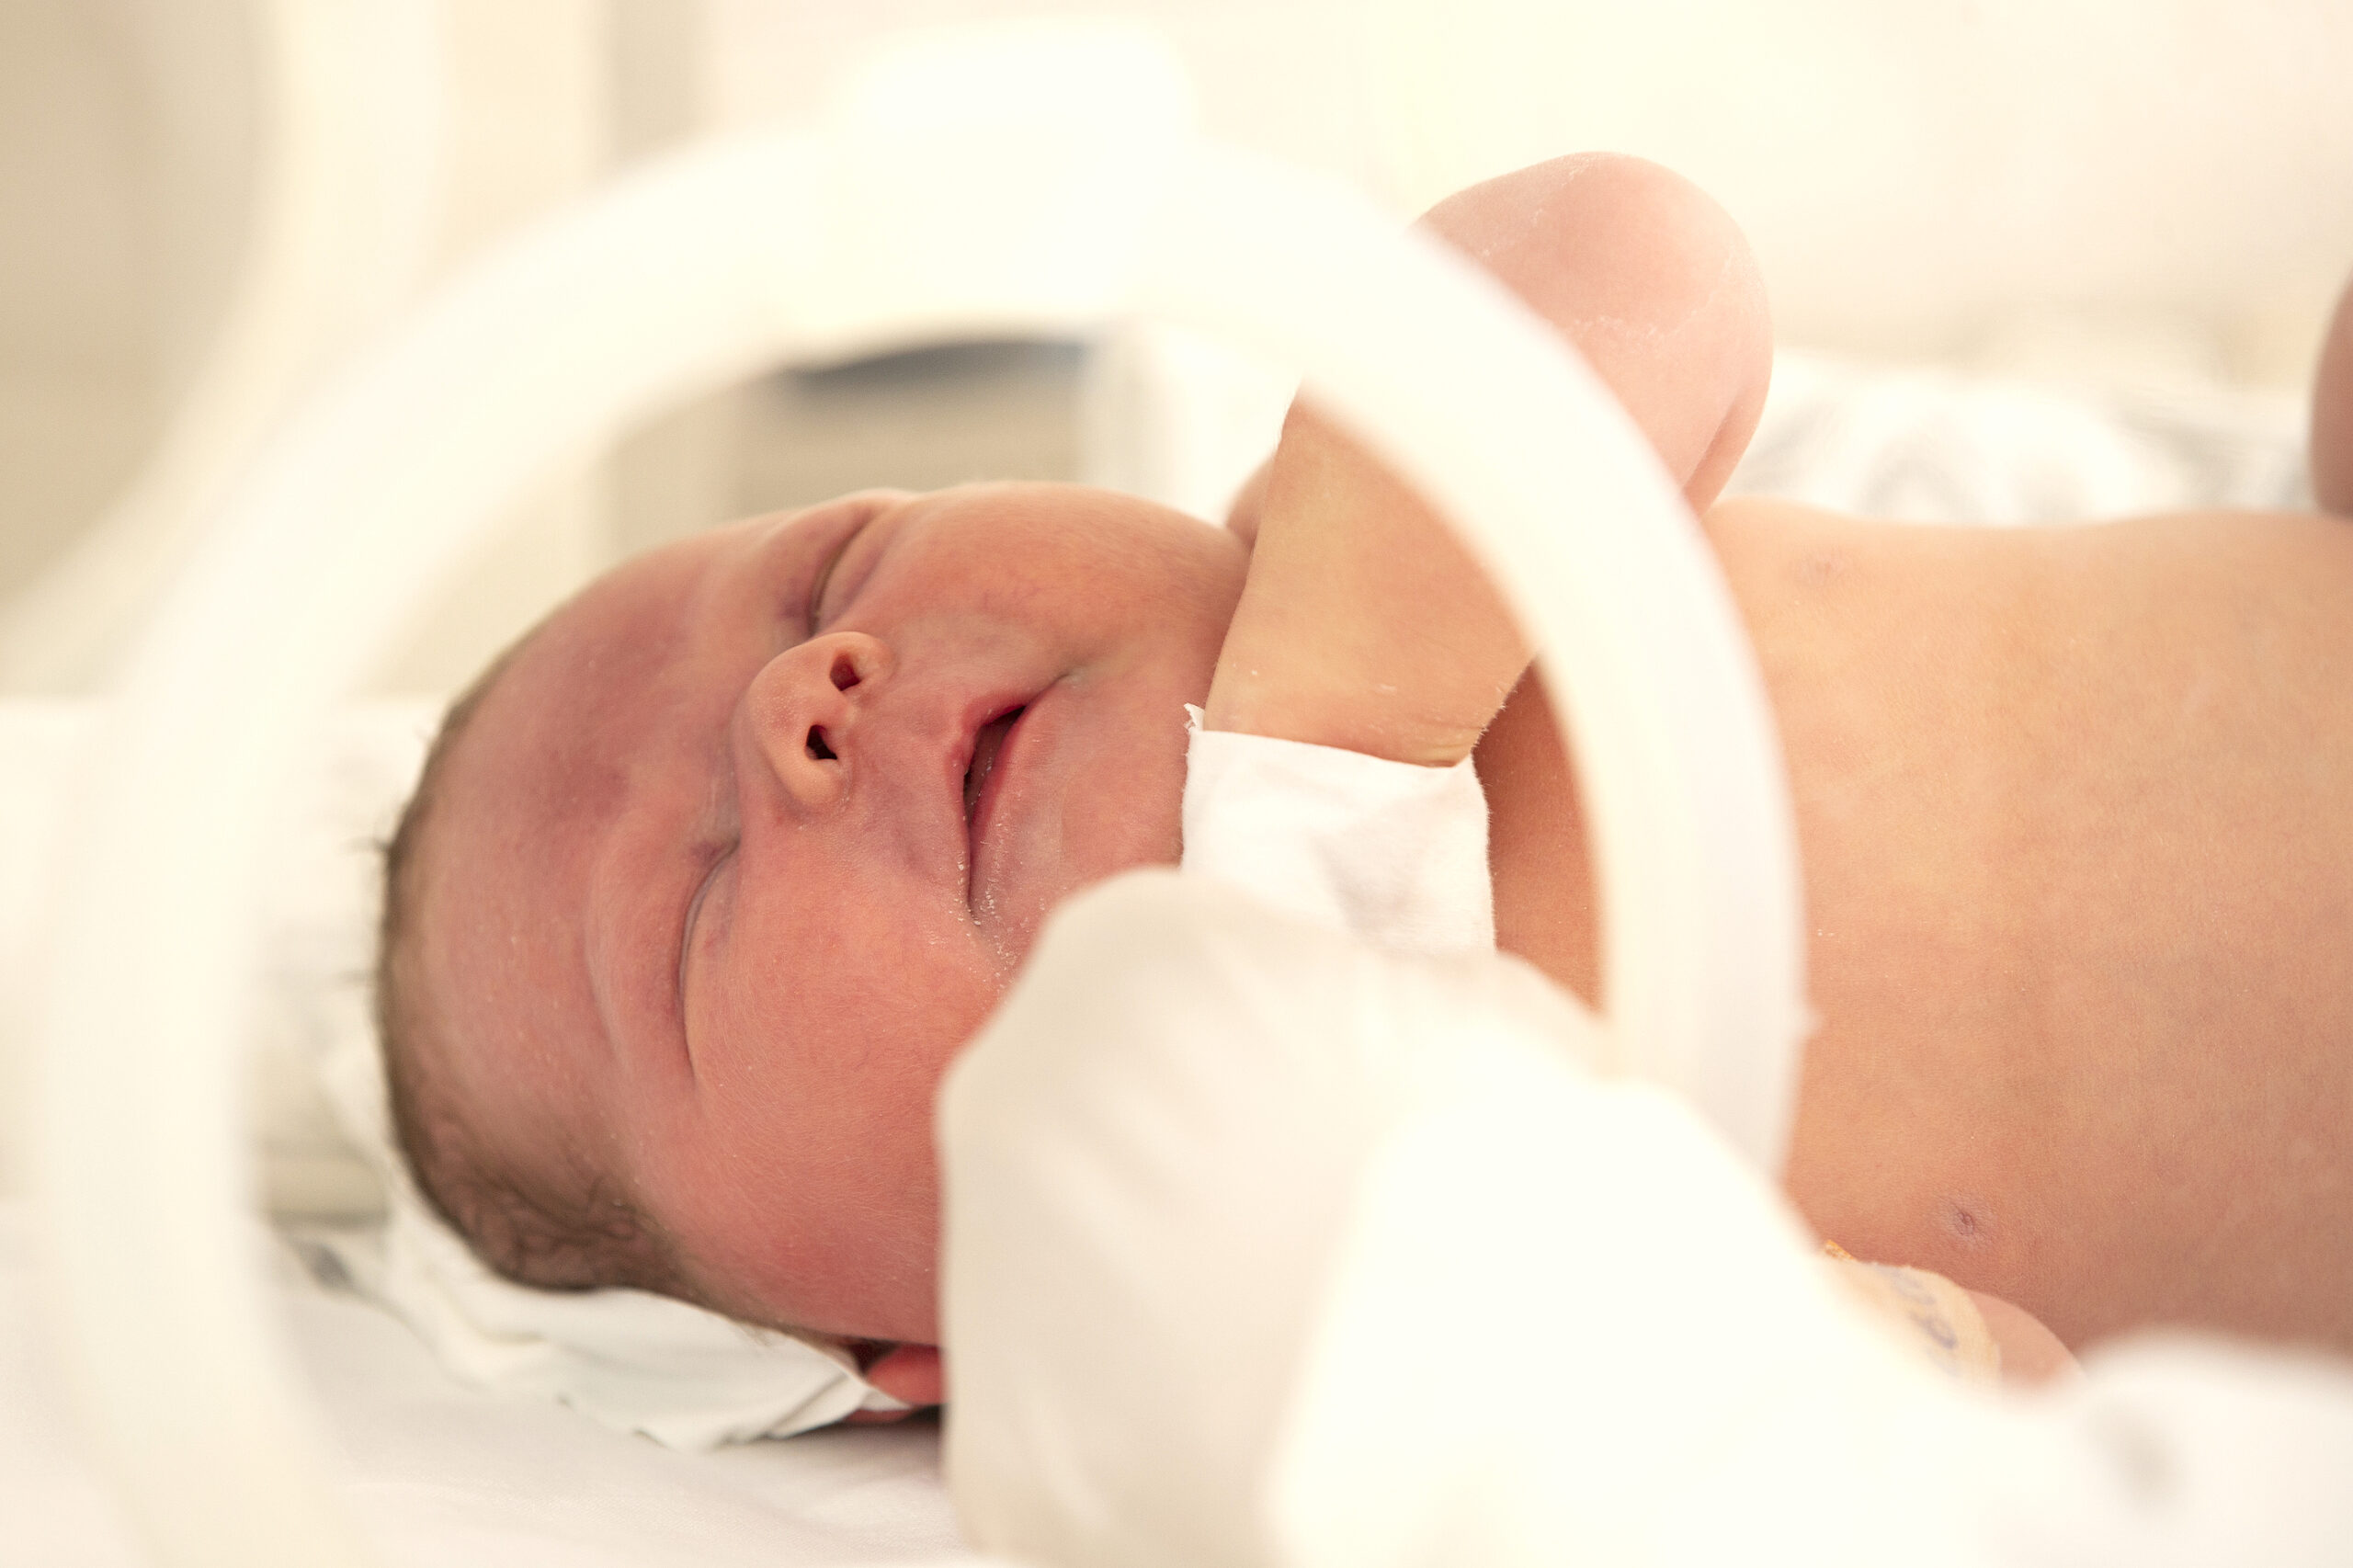 El microbioma de los bebés prematuros y la sepsis